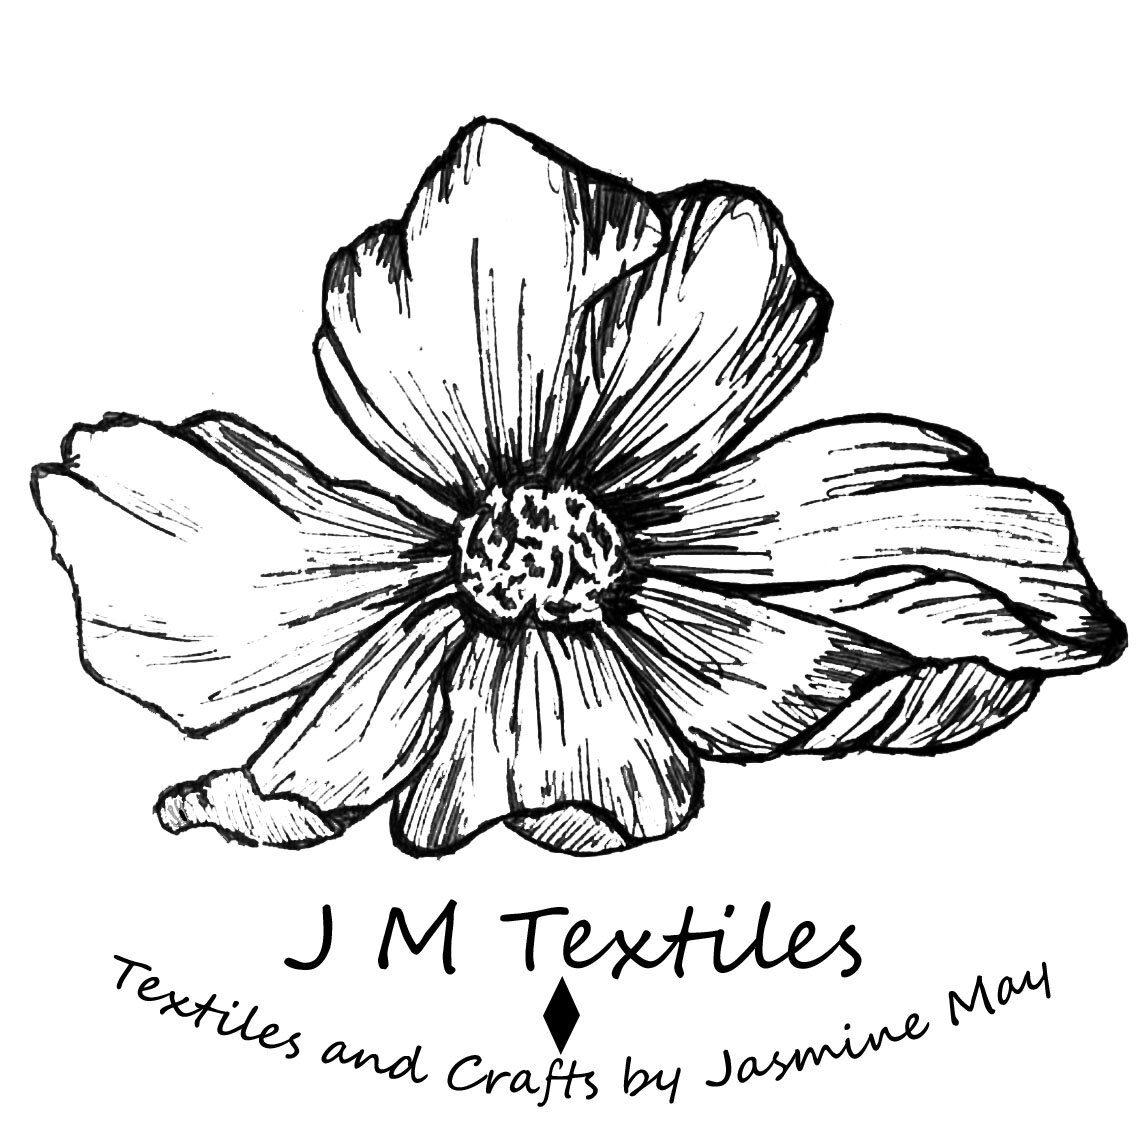 J M Textiles